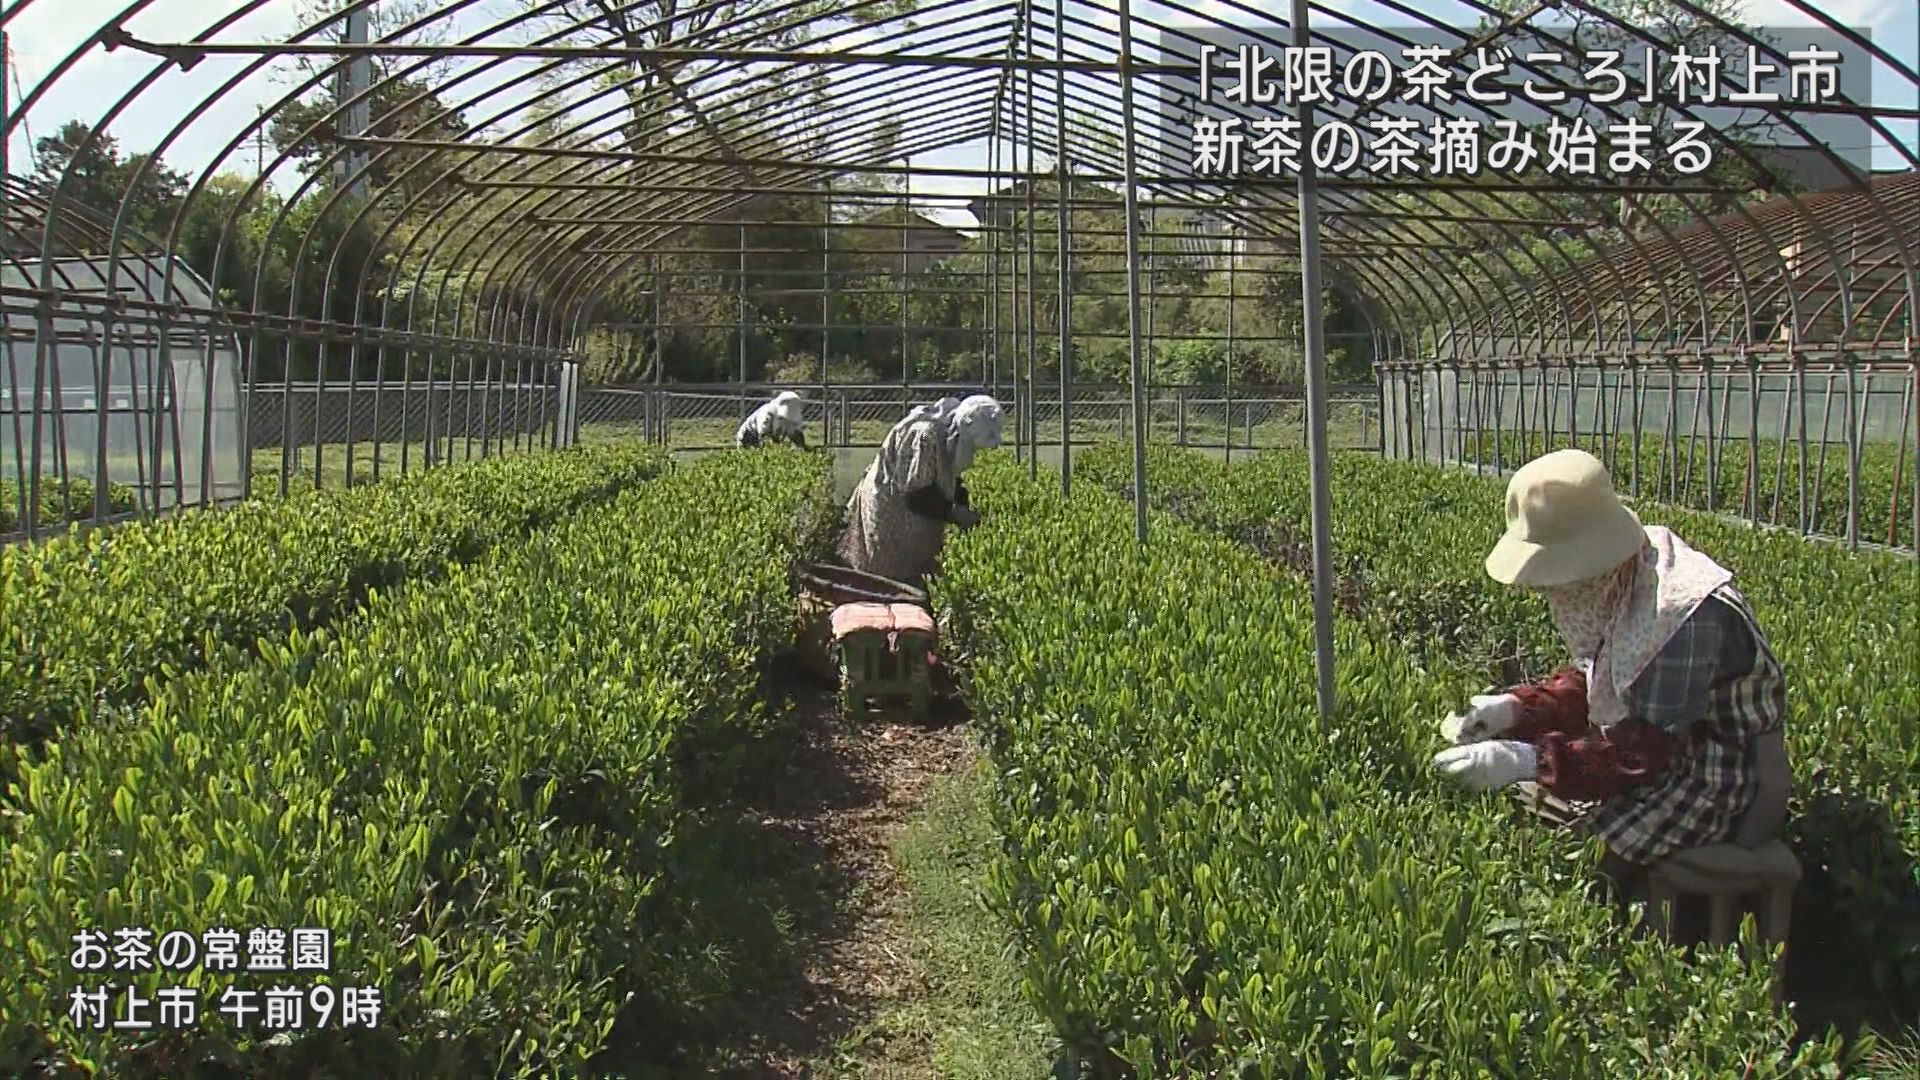 八十八夜に新茶の季節 北限の茶所で茶摘み始まる【新潟･村上市】